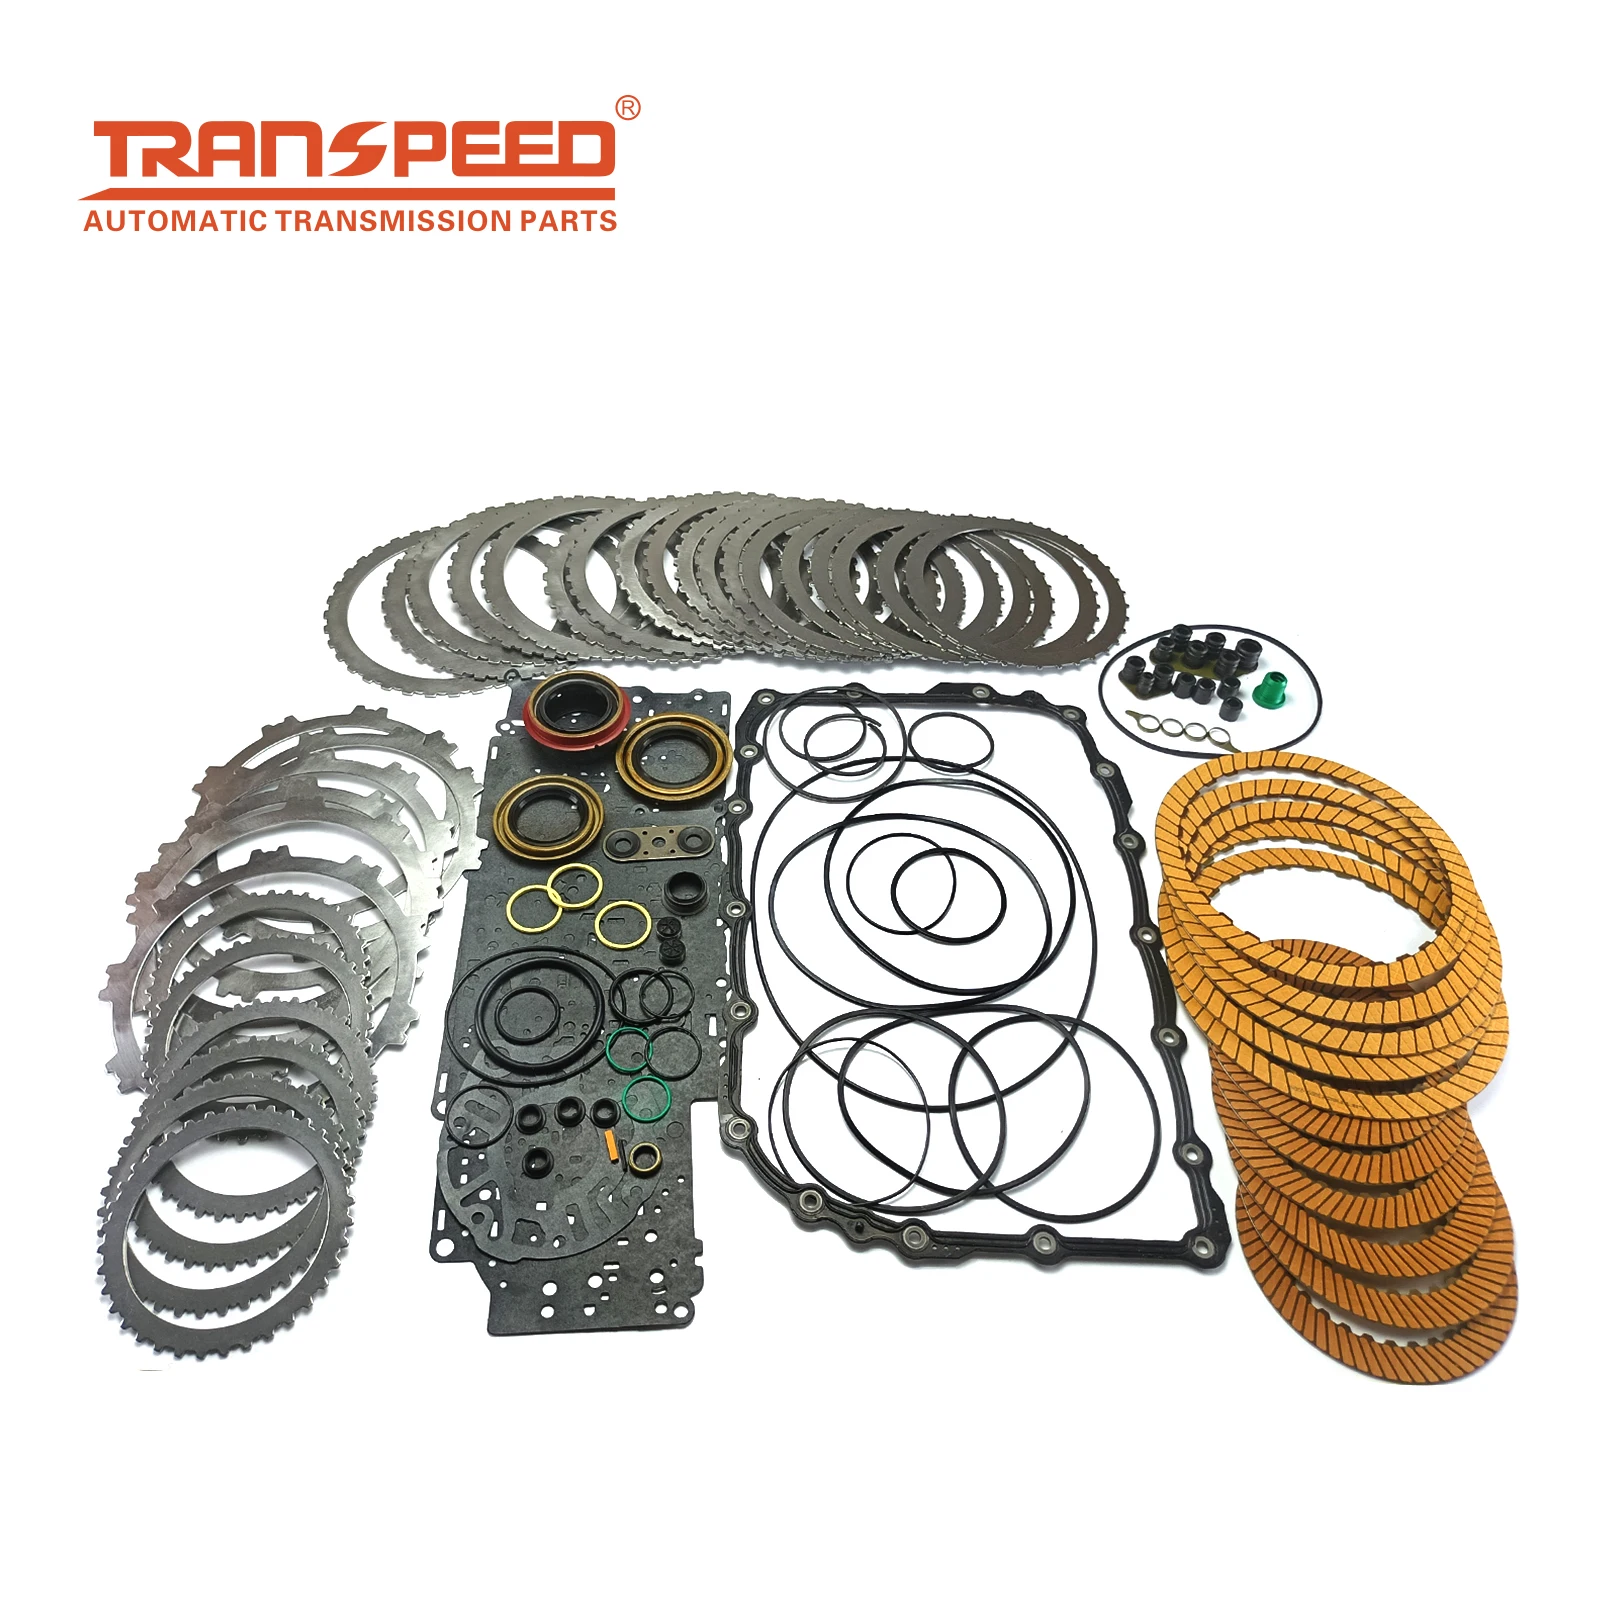 

Transpeed Auto Transmission Master 6l80e Transmission Parts 6l80 Rebuild Kit For Cadillac Hondas